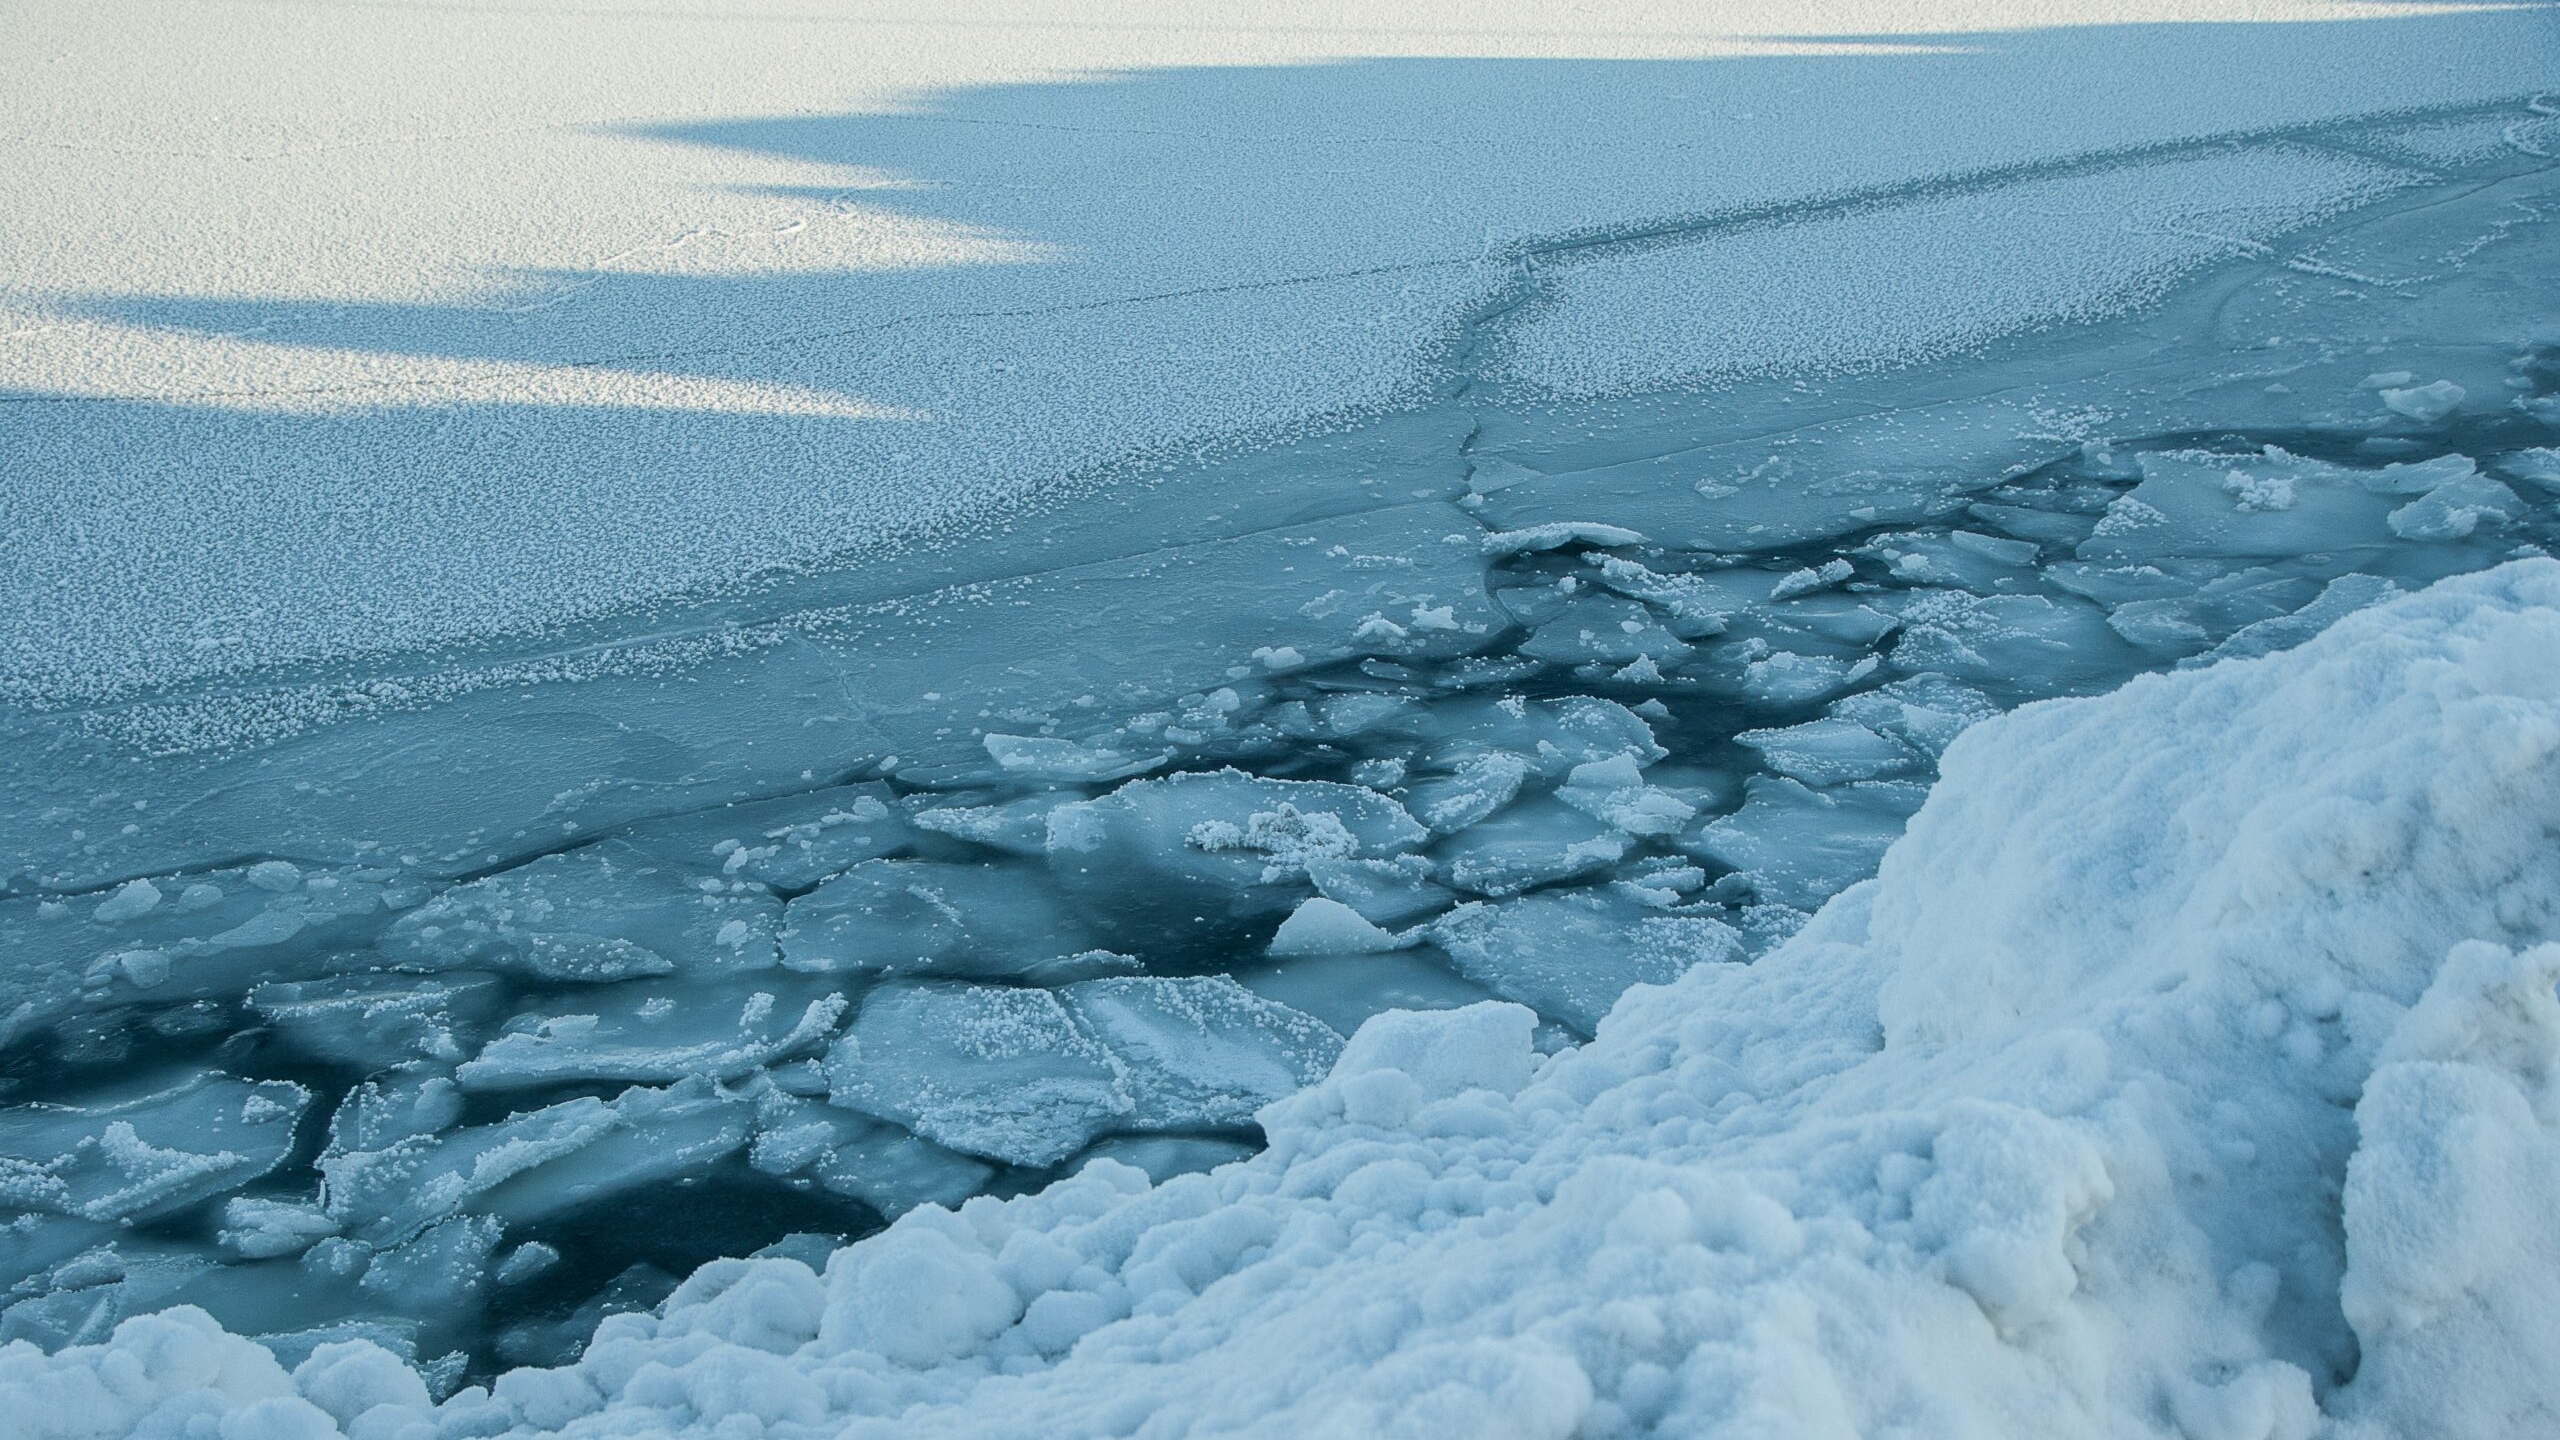 “Стандартная каюта – 2,2 млн рублей”: петербуржцам рассказали, во сколько им обойдется путешествие на Северный полюс